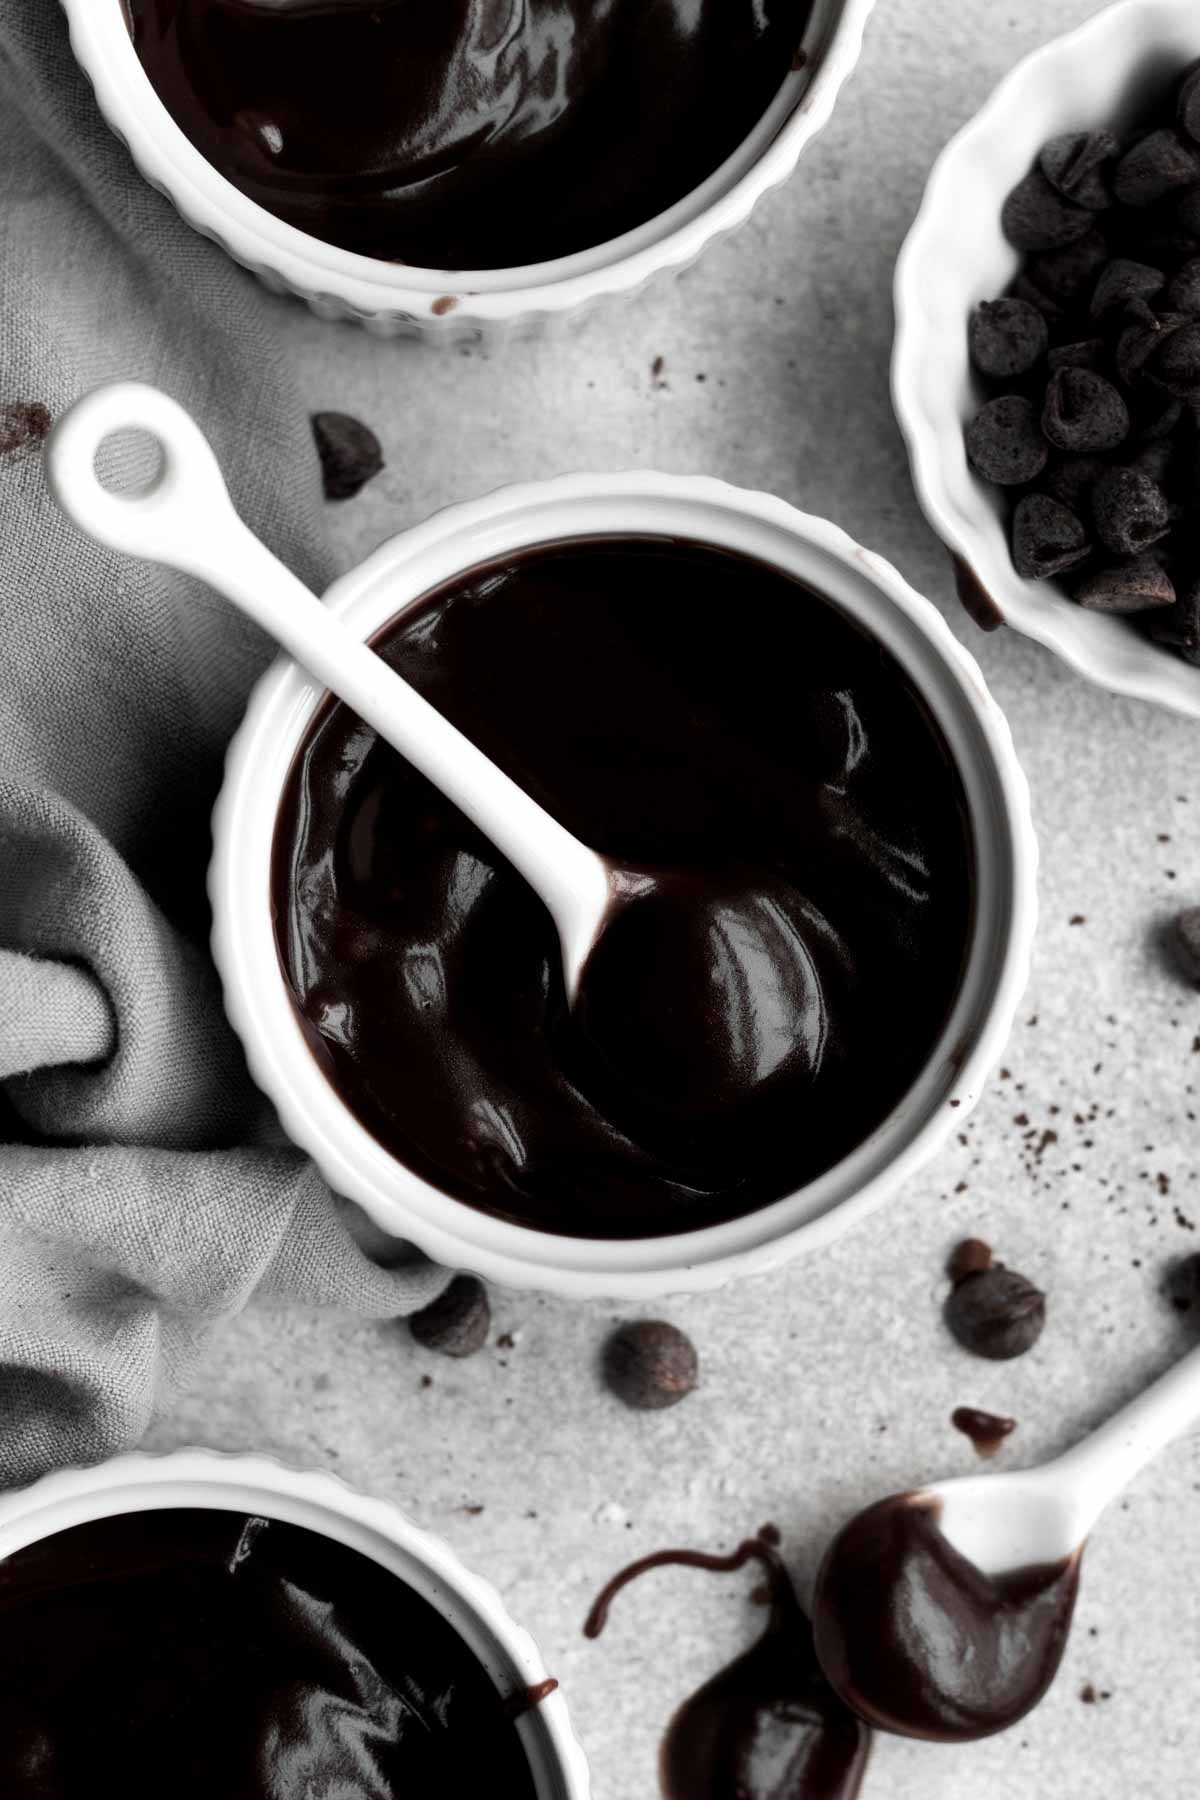 A white ceramic spoon in a ramekin of dark delicious pudding.